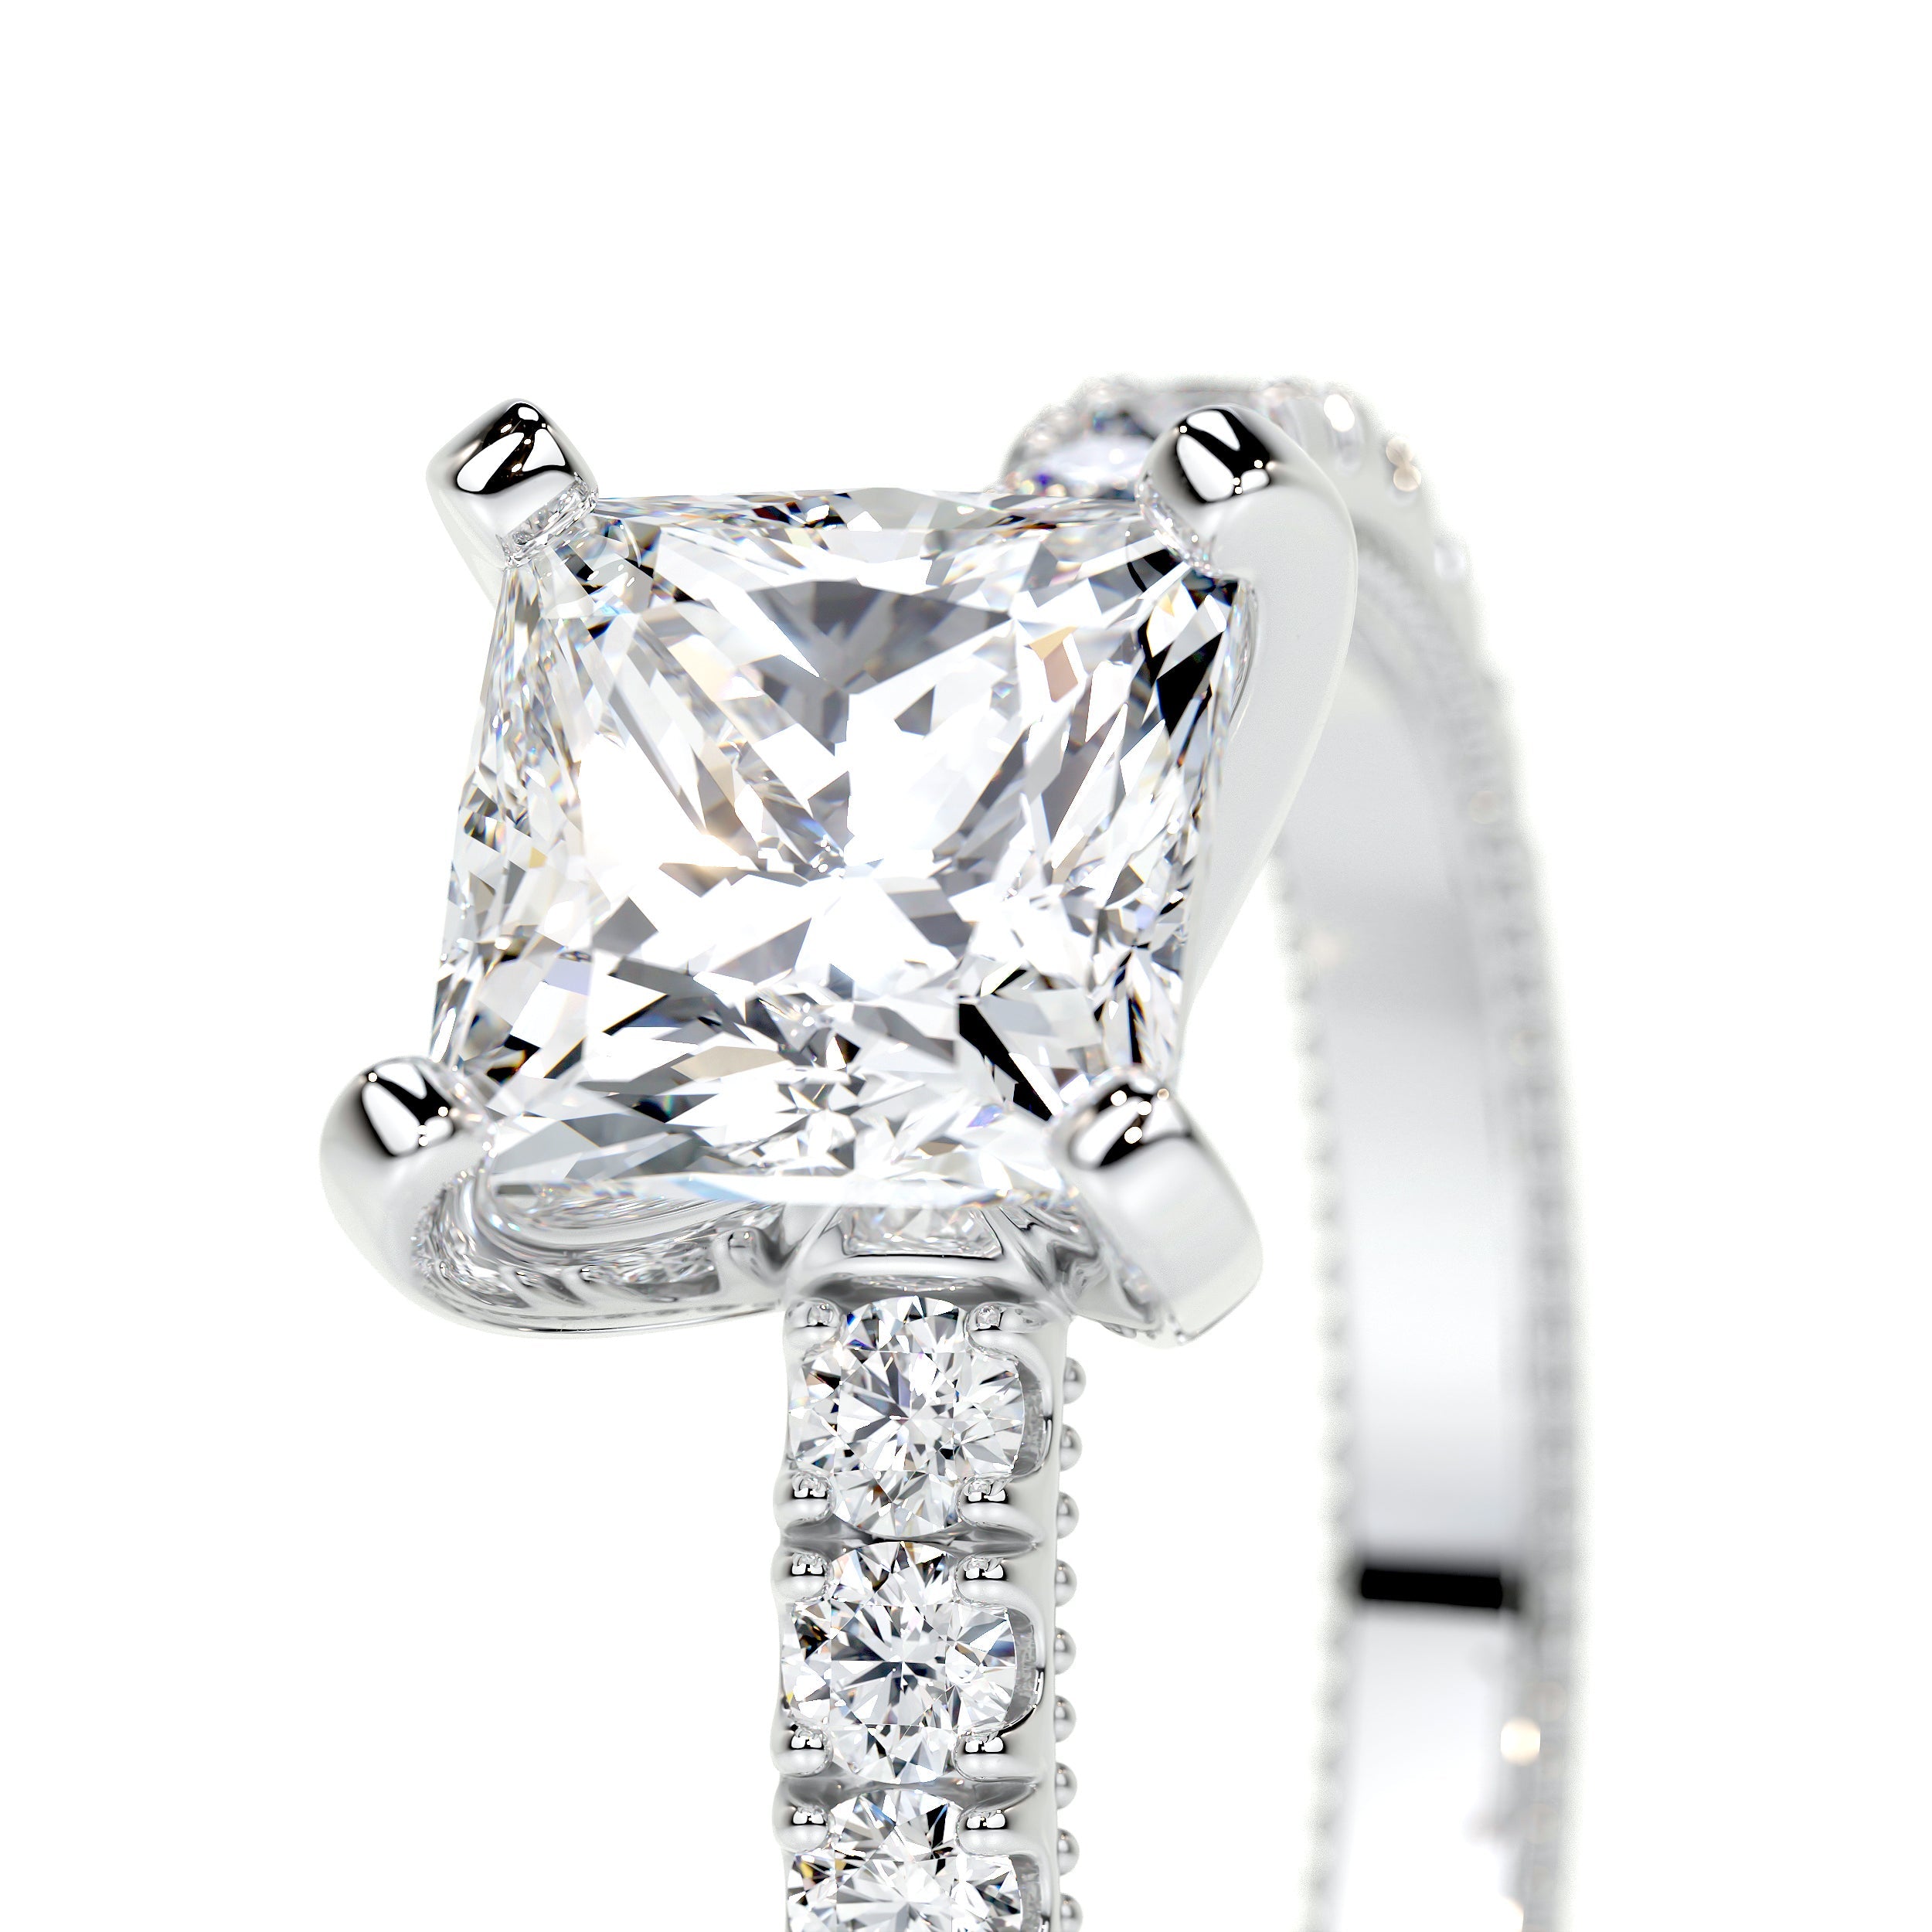 Blair Lab Grown Diamond Ring   (2 Carat) -18K White Gold